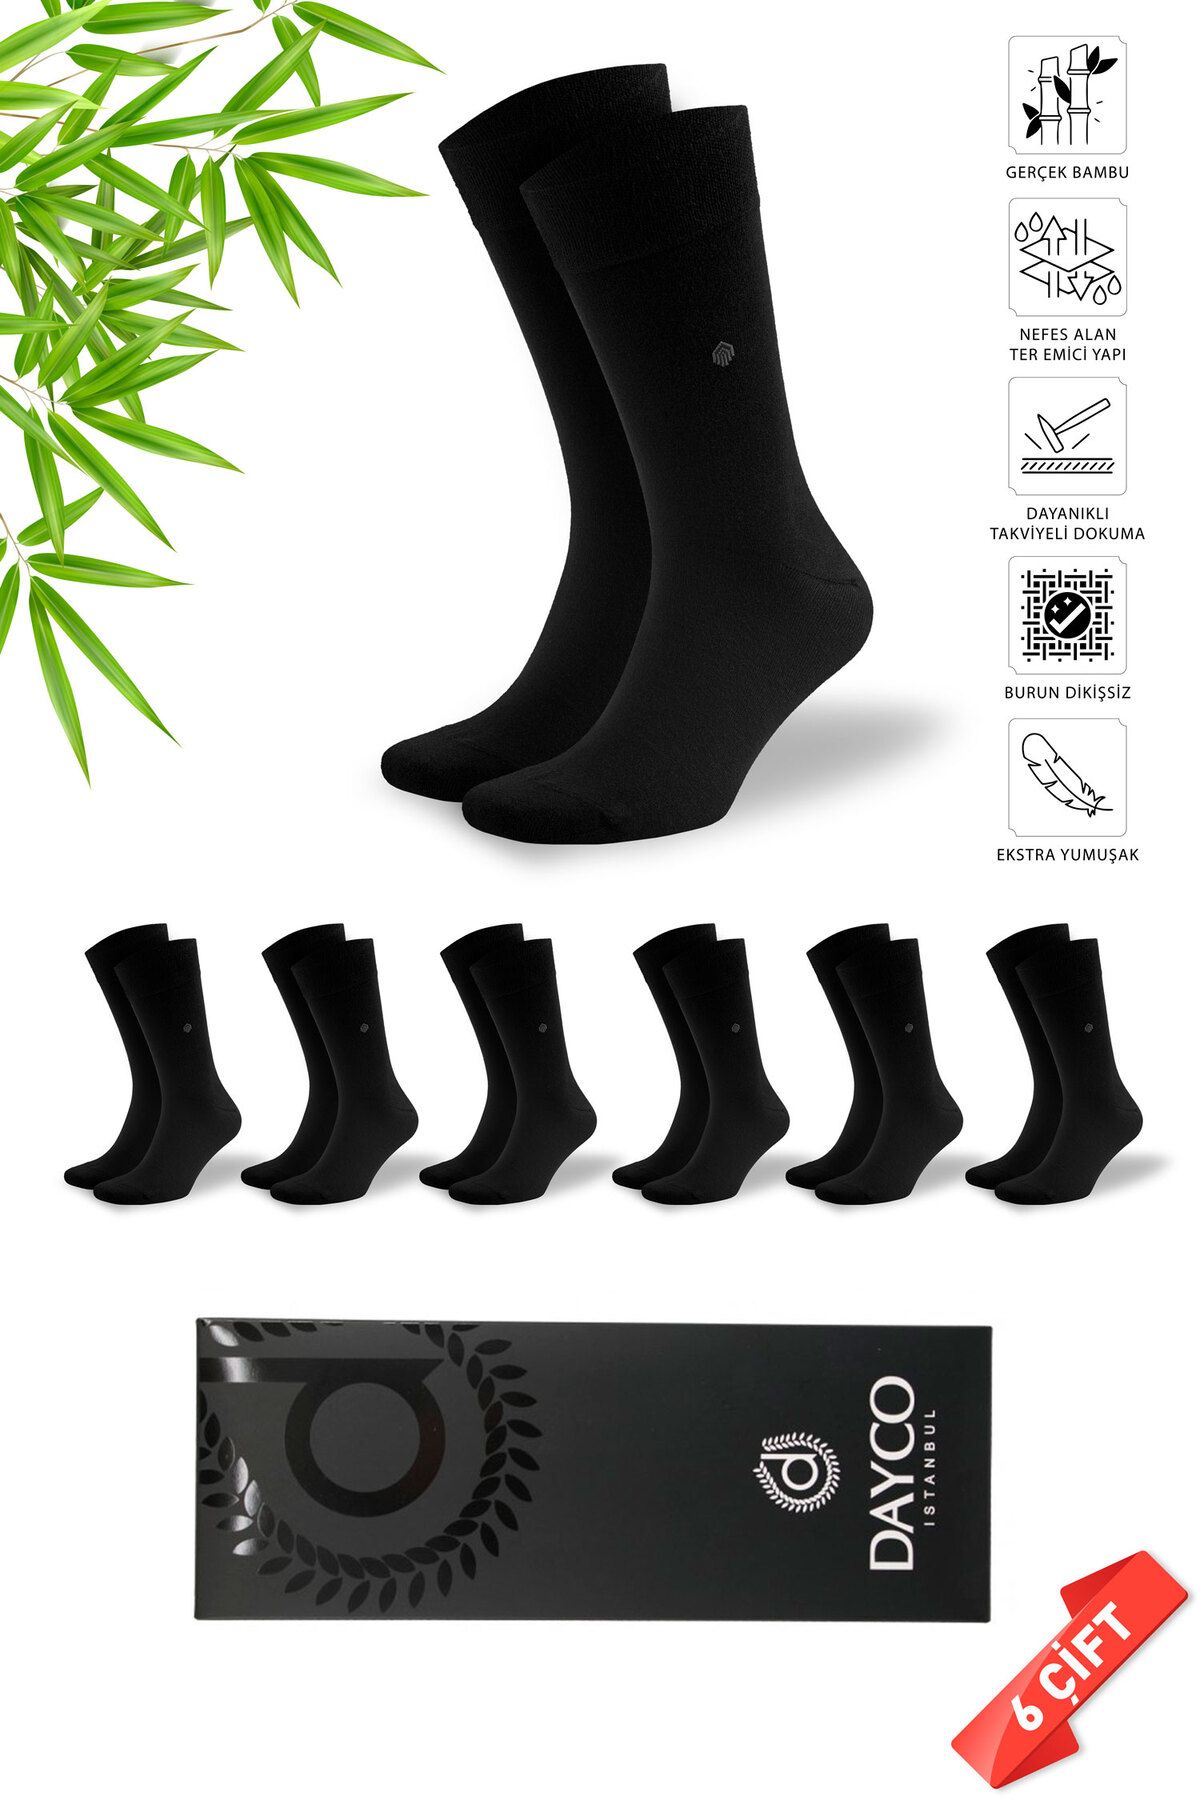 DAYCO Premium Klasik Uzun Boy Siyah Renk Kışlık Erkek Bambu Soket Çorap - 41-45 - 20127